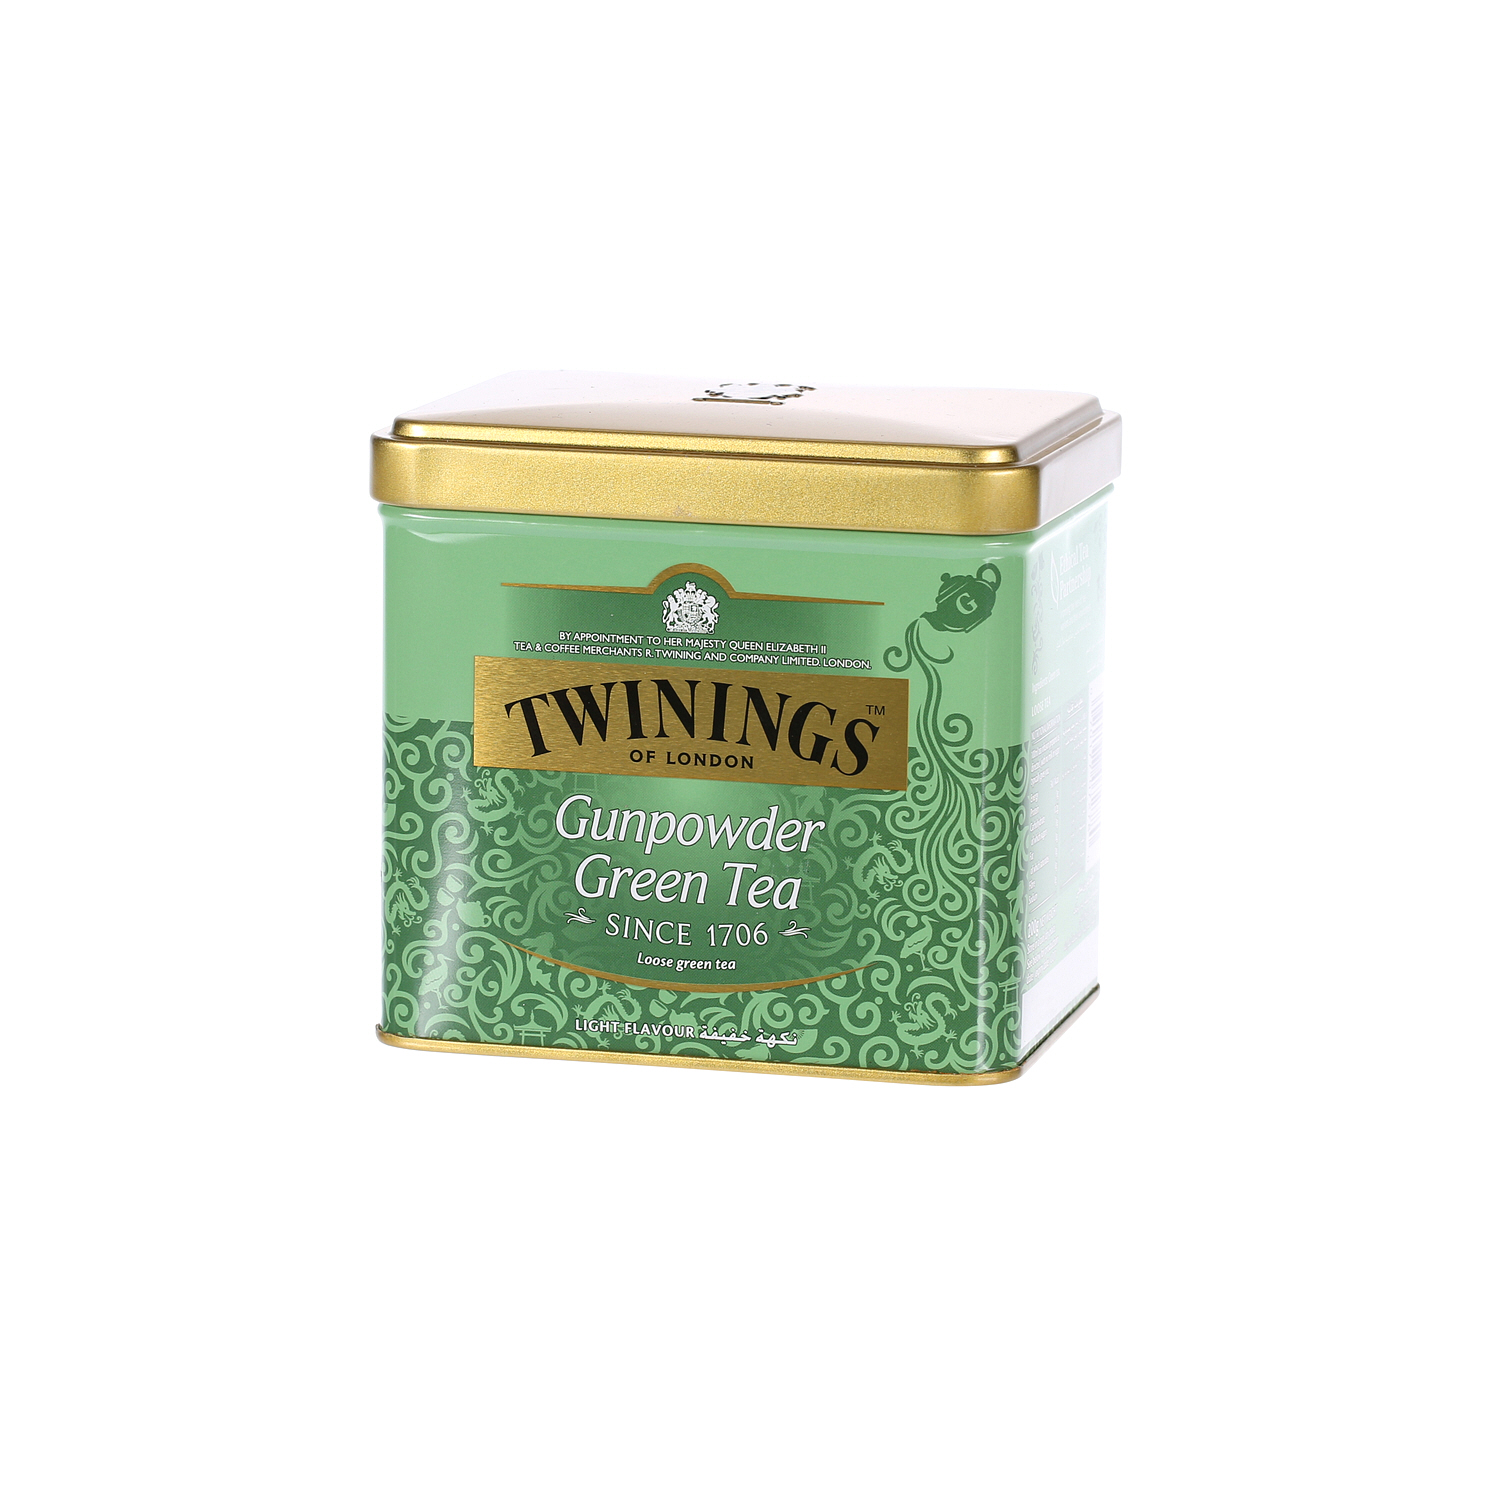 Twinings Goldline Tea Green Gun Powder Tin 200 g